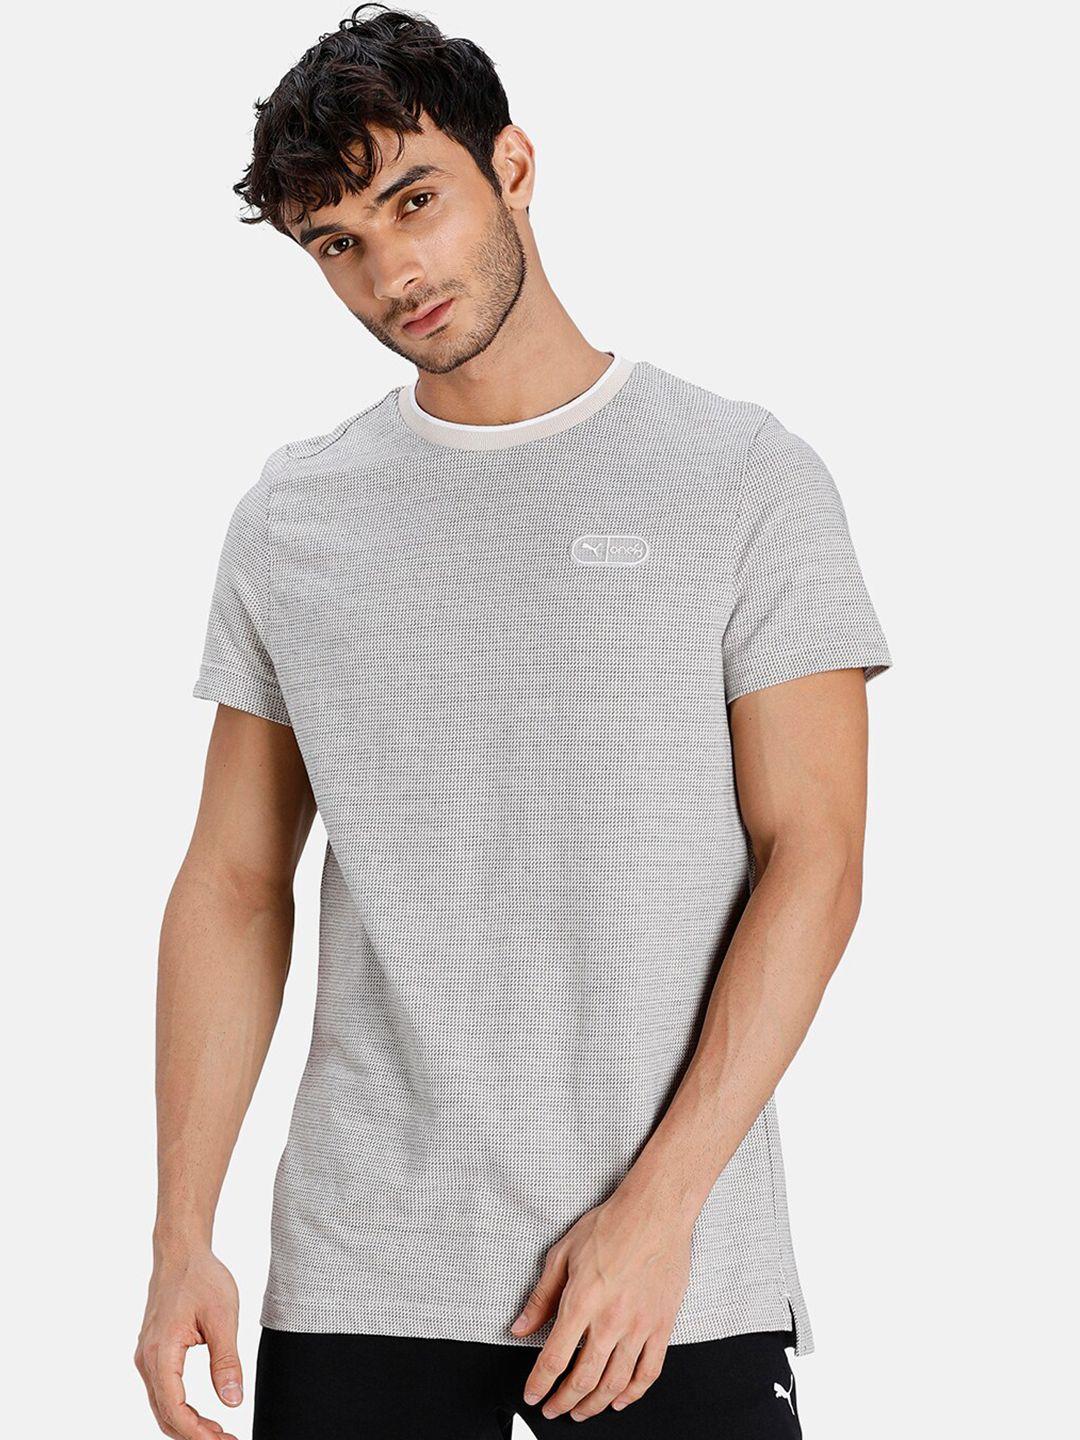 puma-men-grey-solid-t-shirt